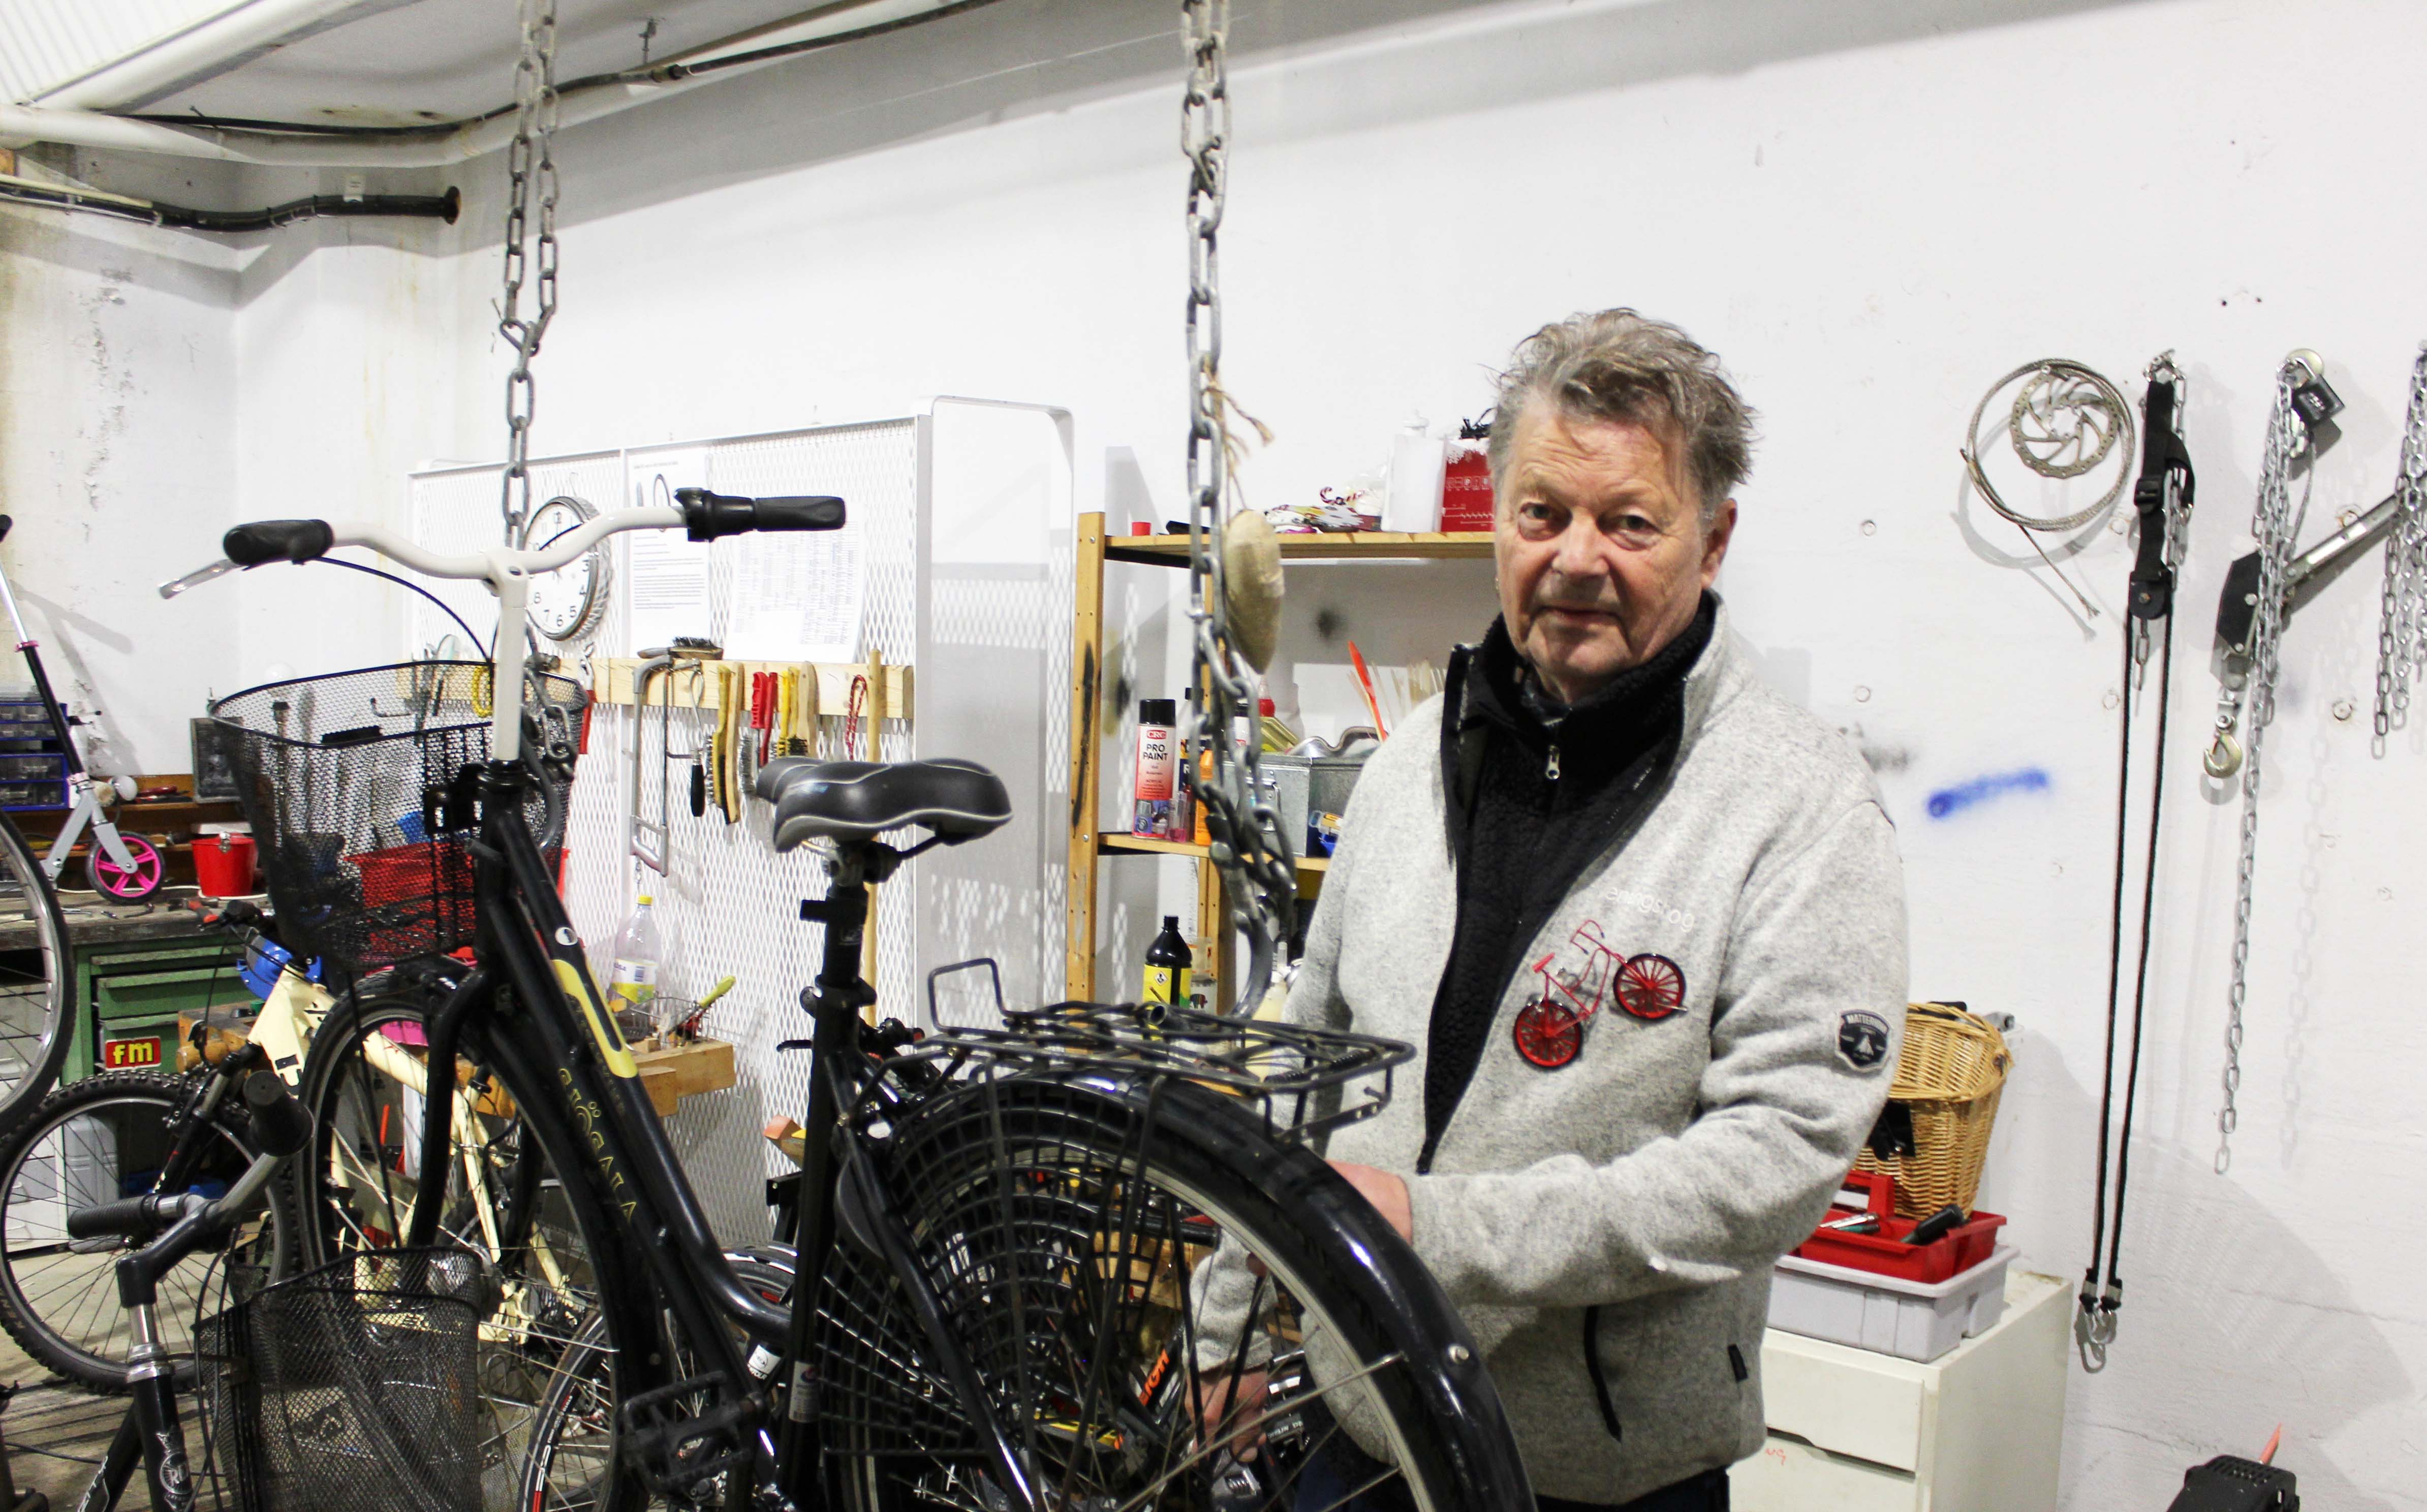 Göran reparerar cyklar, Reningsborg